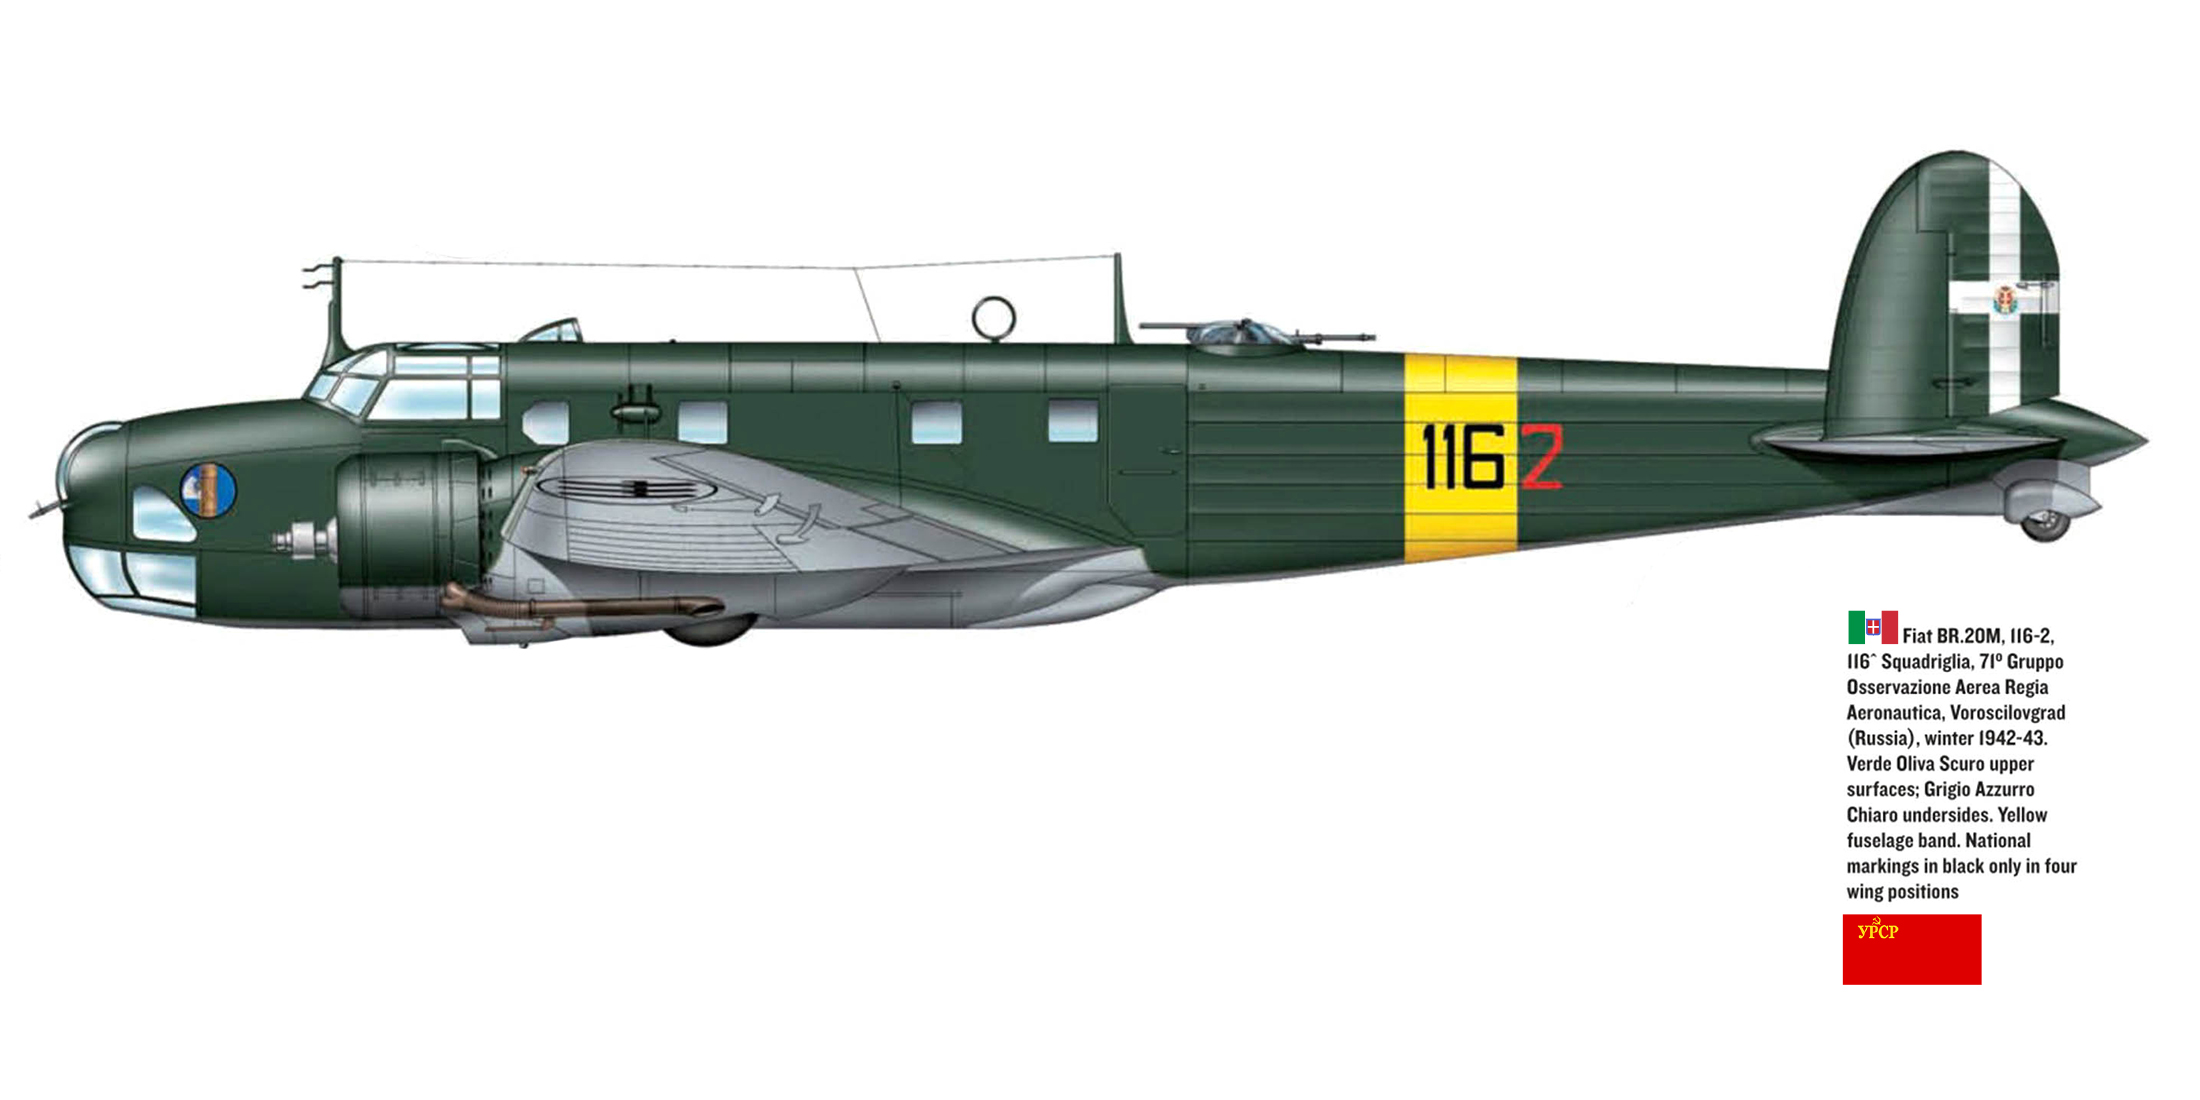 Regia Aeronautica Fiat BR.20M Cicogna 71 Gruppo 116 Sqadriglia 116 2 Voroscilovgrad Ukrain winter 1942 43 0A